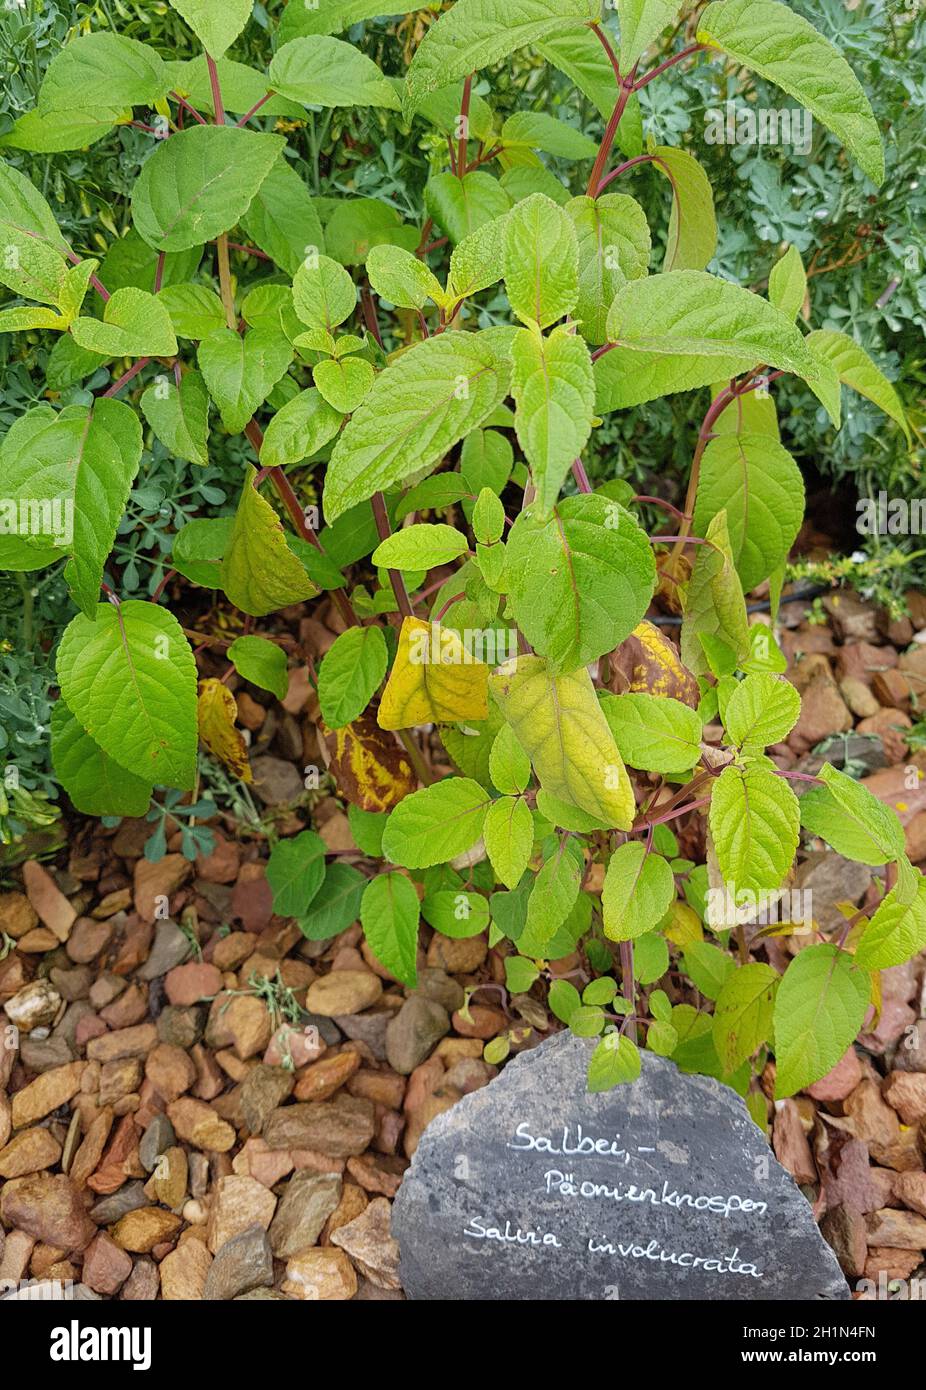 Salbei, Paeonienknospen, Salvia involucrata, ist eine wichtige Heilpflanze und eine Duftpflanze mit blauen Blueten. Sie ist eine schoene Staude und wi Banque D'Images